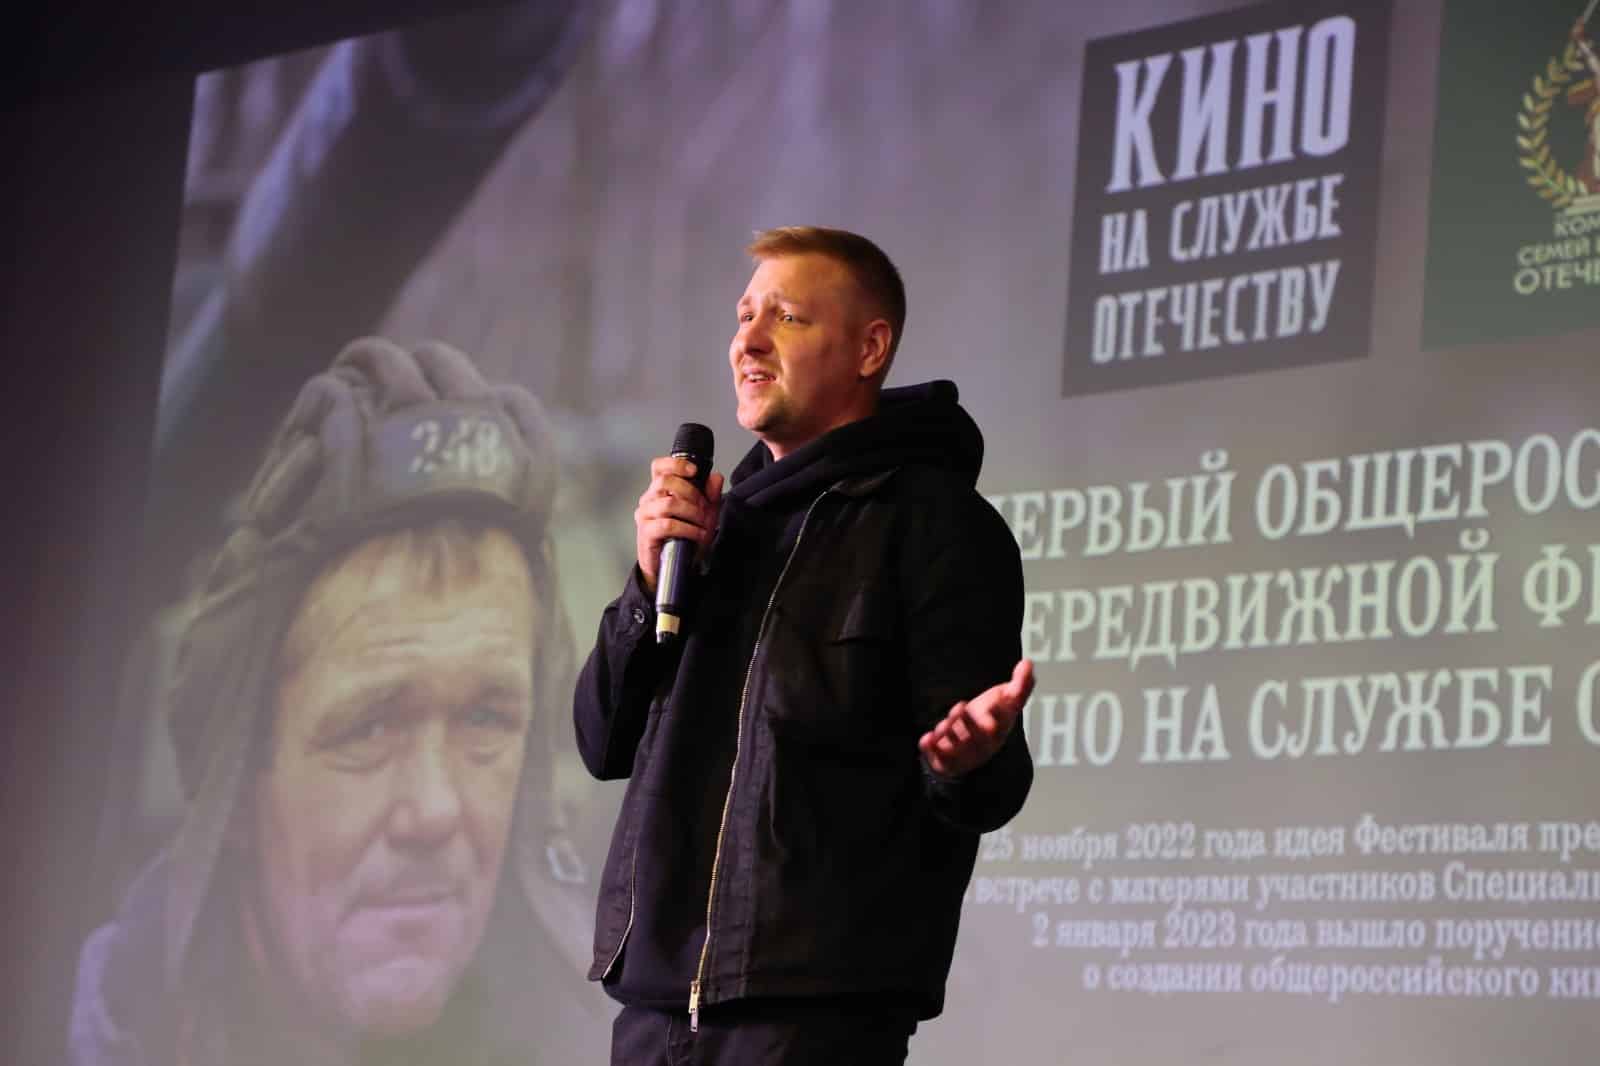 В Омске состоялась презентация первого Общероссийского передвижного кинофестиваля "Кино на службе Отечеству"